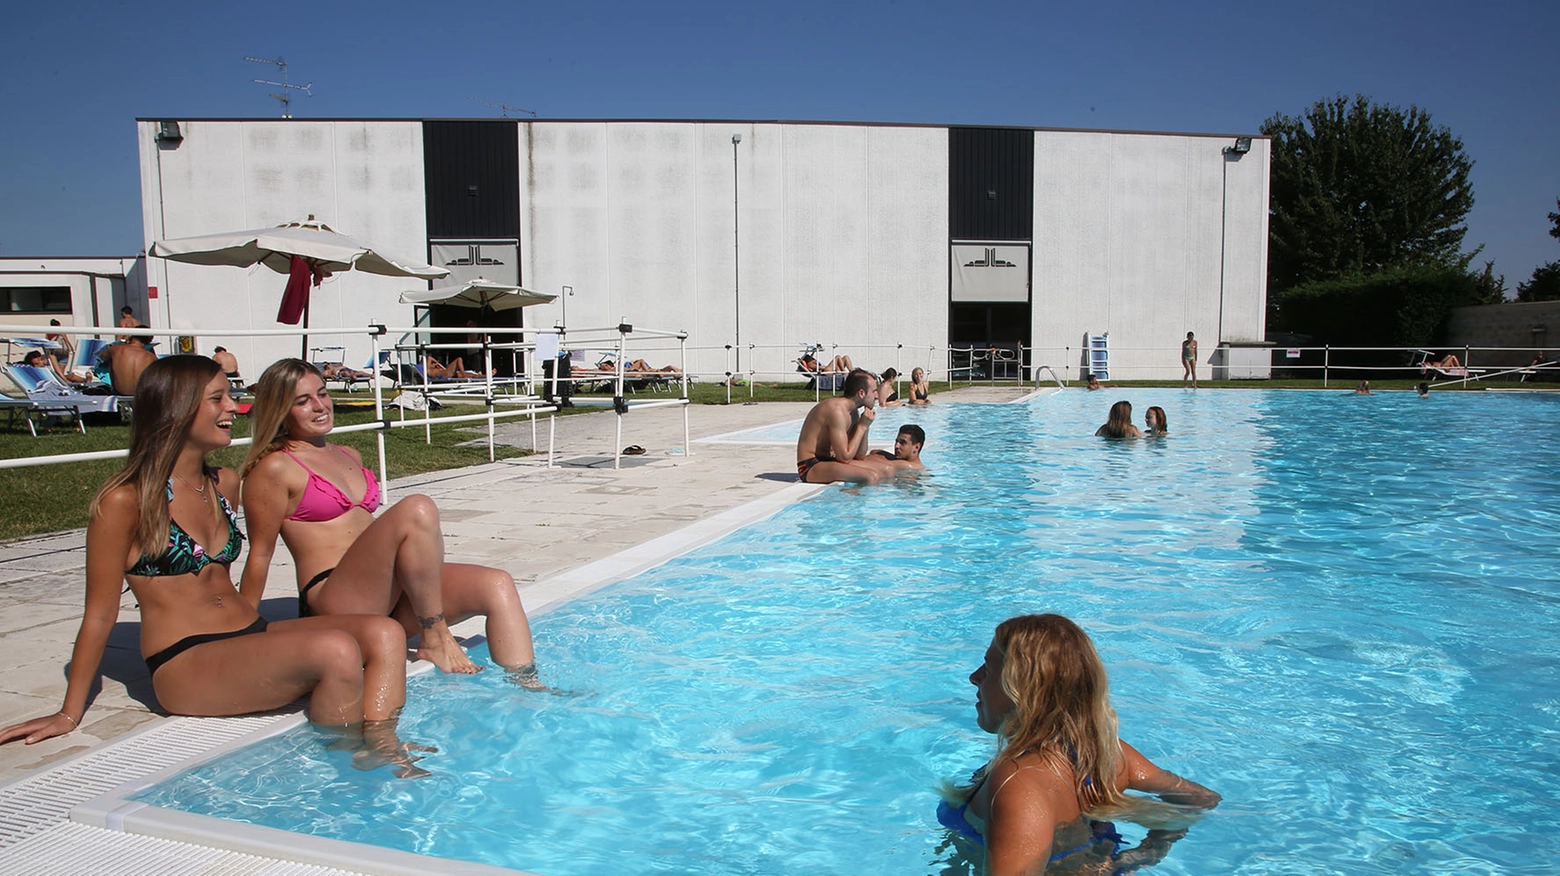 Ragazze in piscina (foto d'archivio)